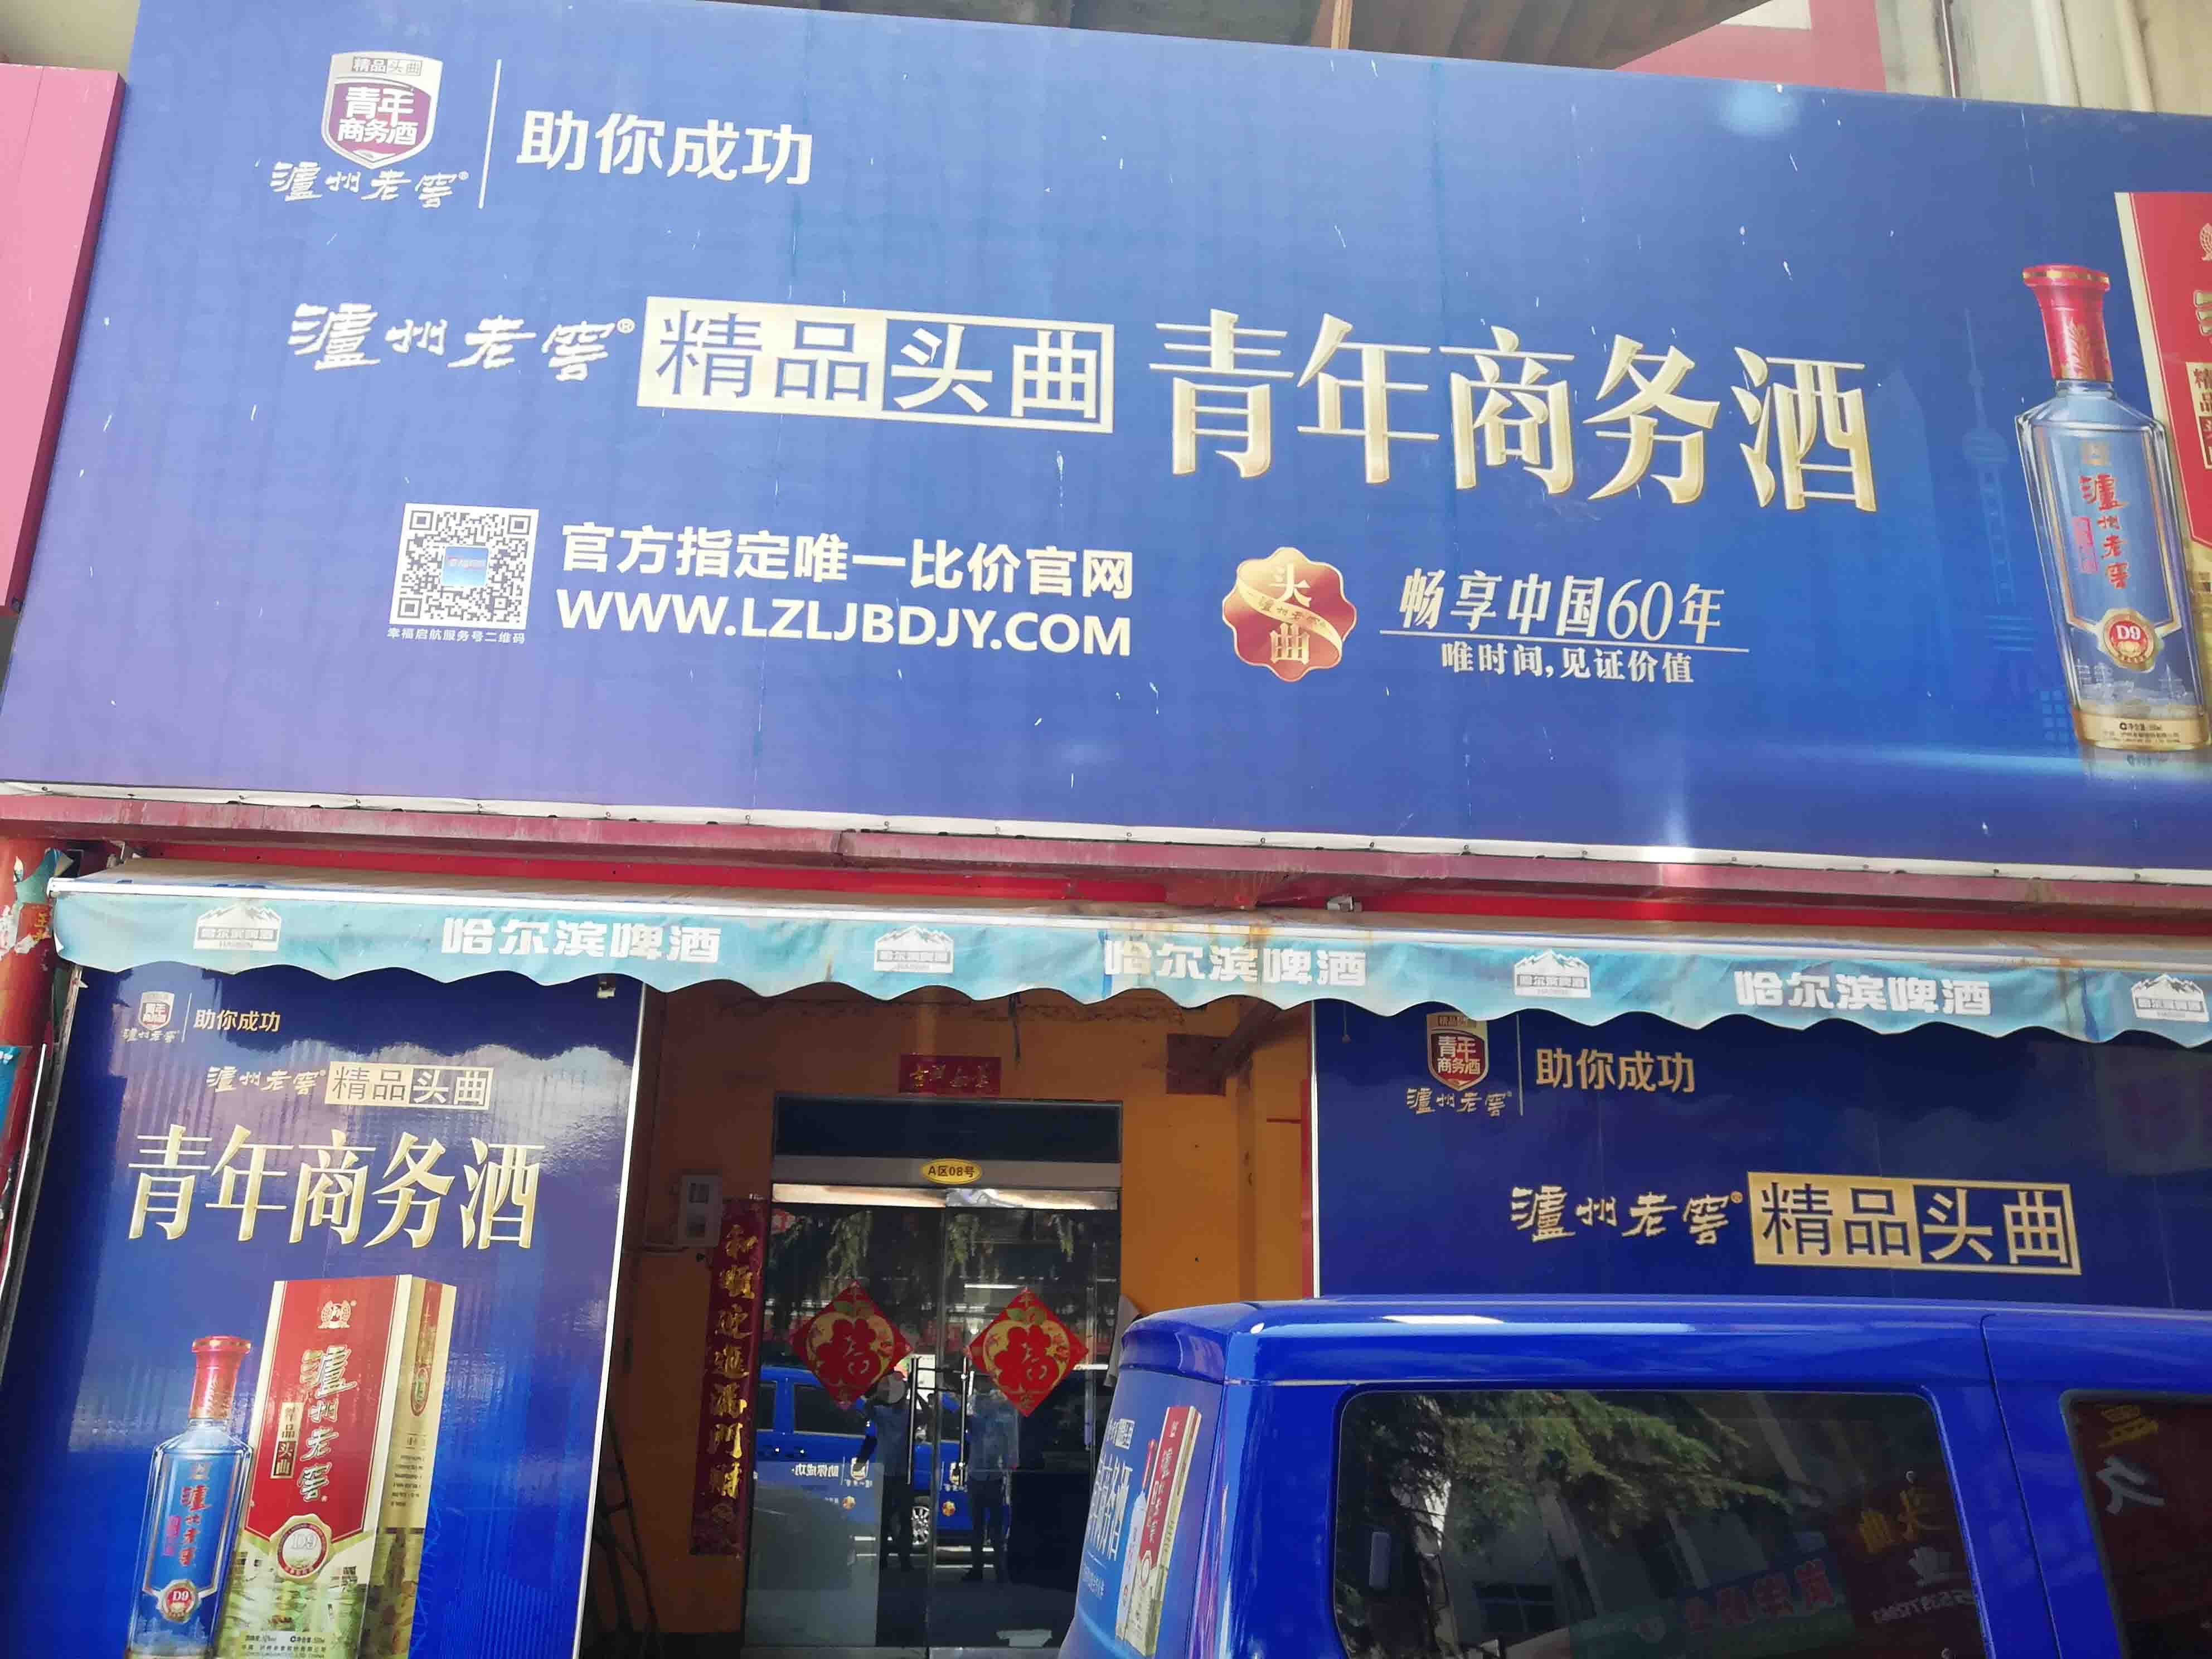 广州市场东街经济型写字楼在洛阳出租，旨在为预算有限的企业提供实惠的选择。我们的列表包含多种价格合理的高端办公空间